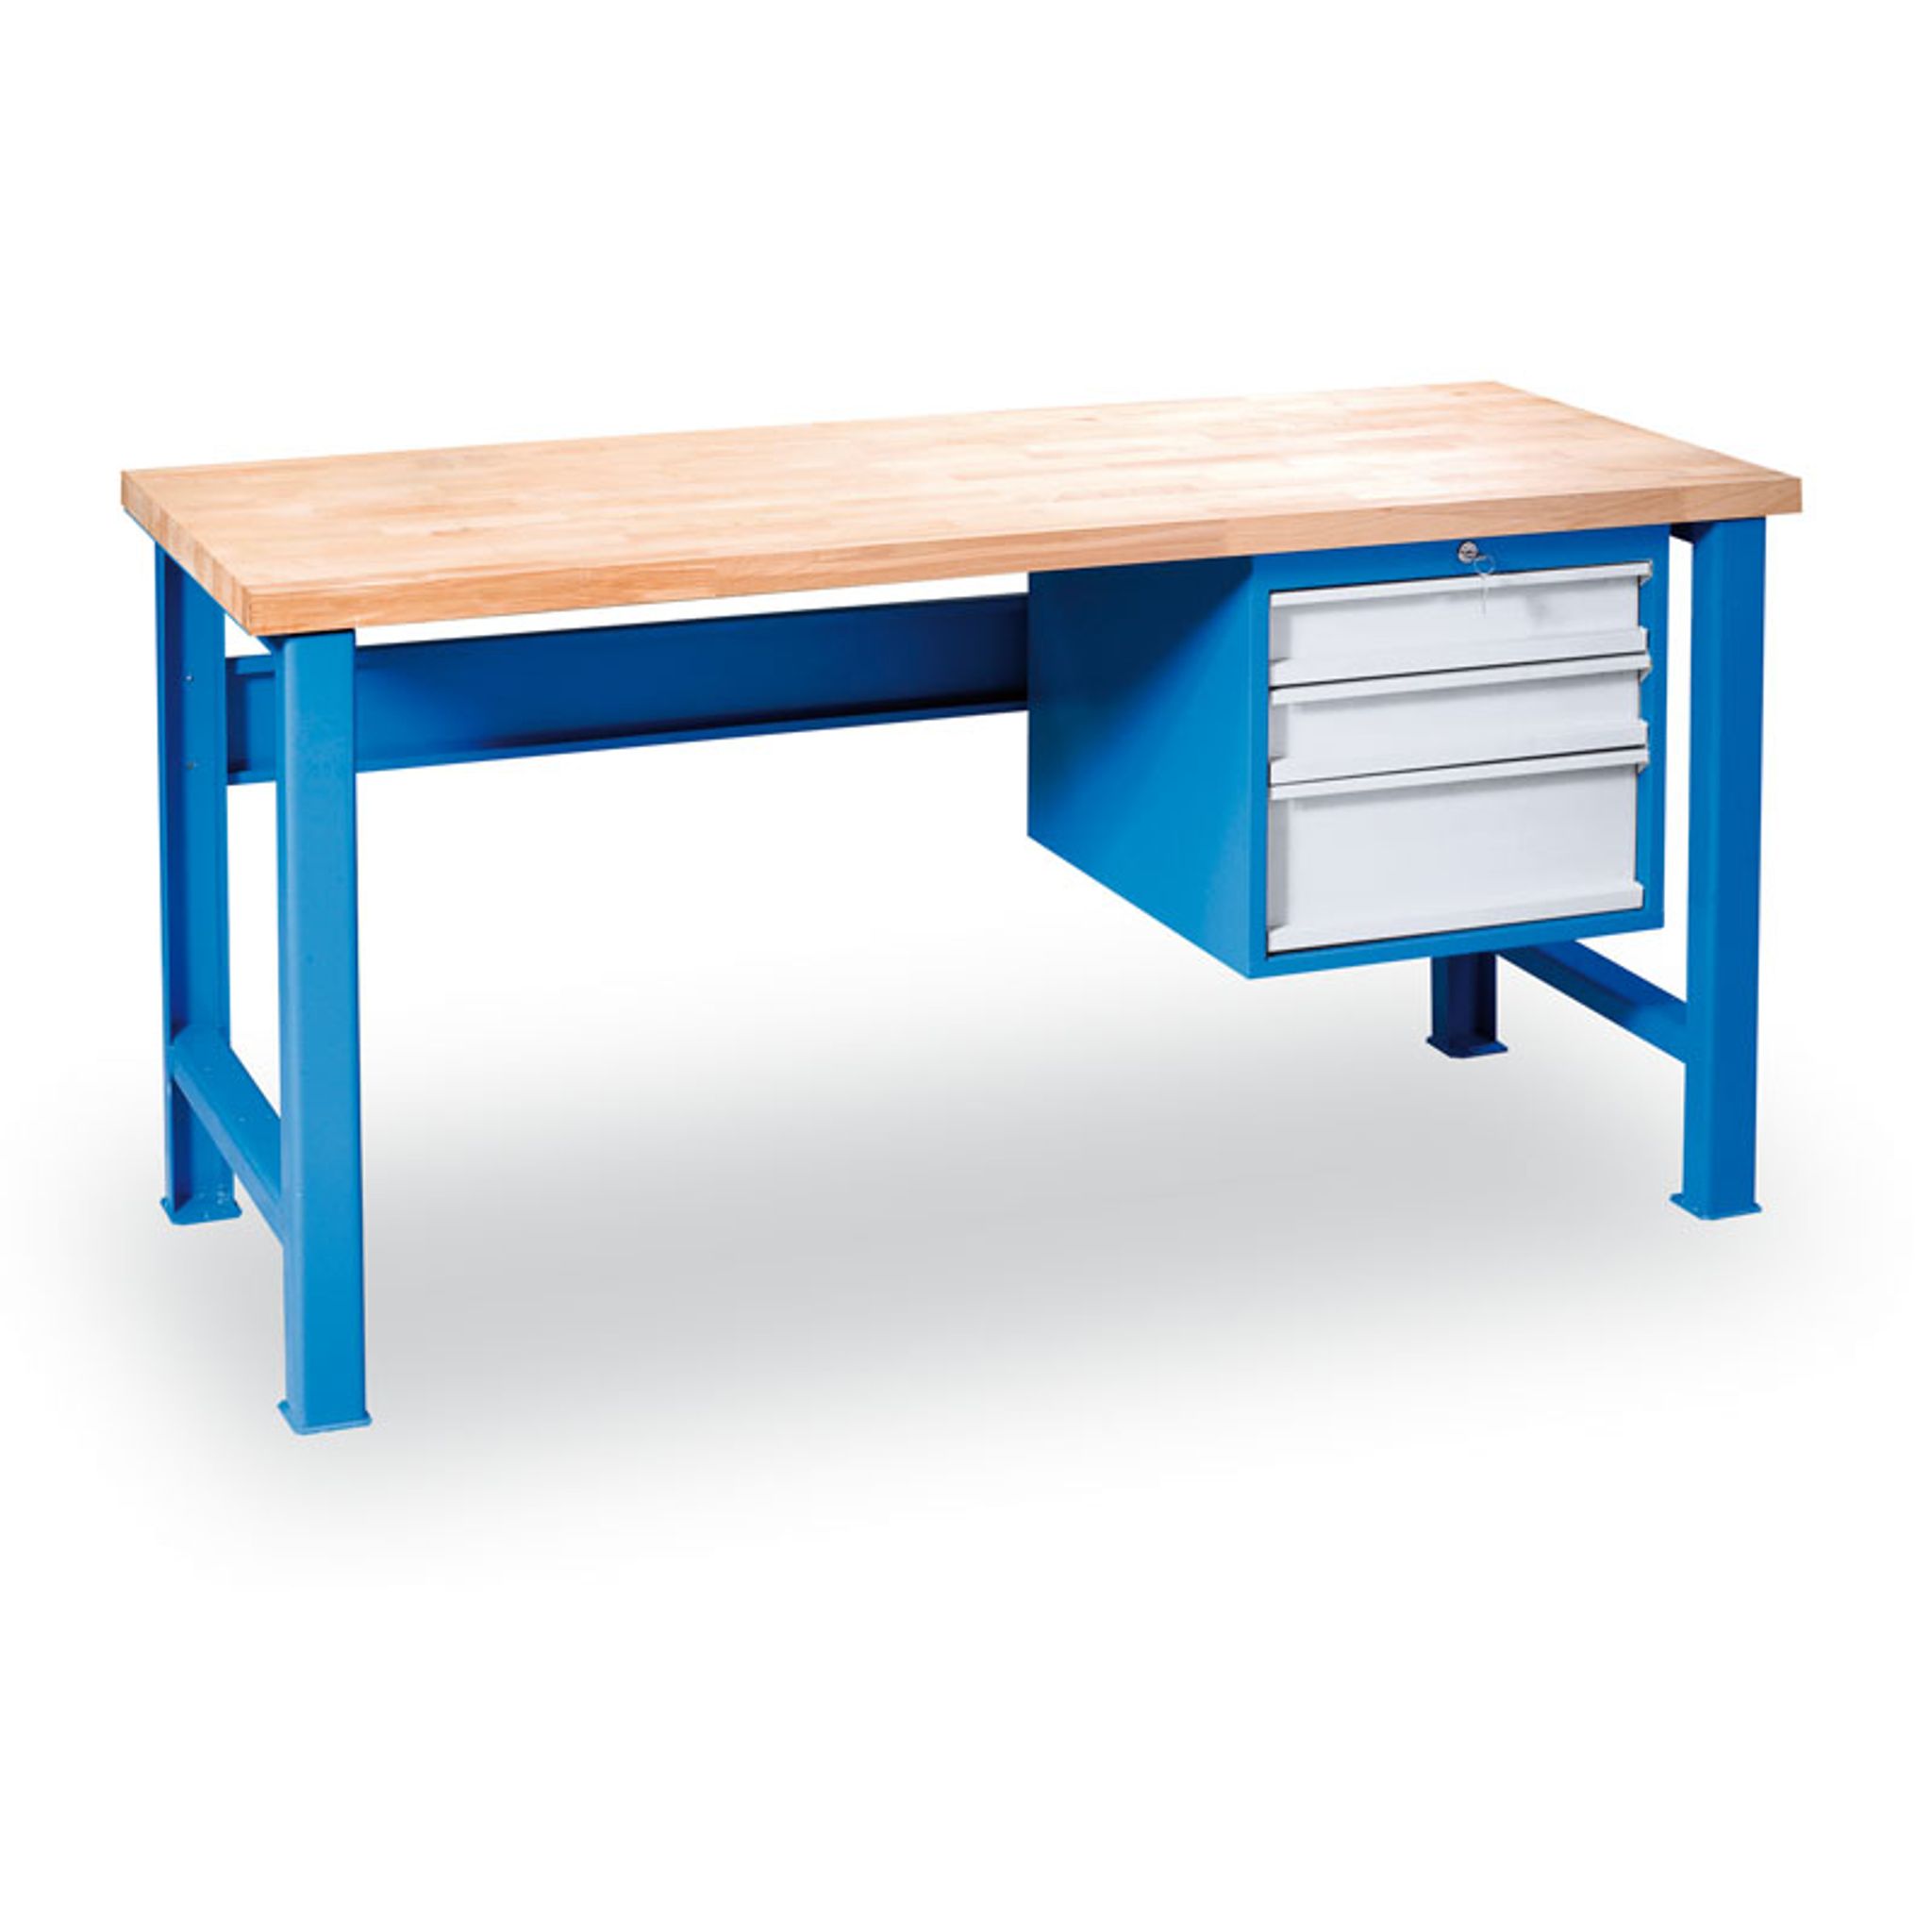 Výškovo nastaviteľný pracovný stôl GÜDE Variant so závesným boxom na náradie, buková škárovka, 3 zásuvky, 1700 x 800 x 850 - 1050 mm, modrá